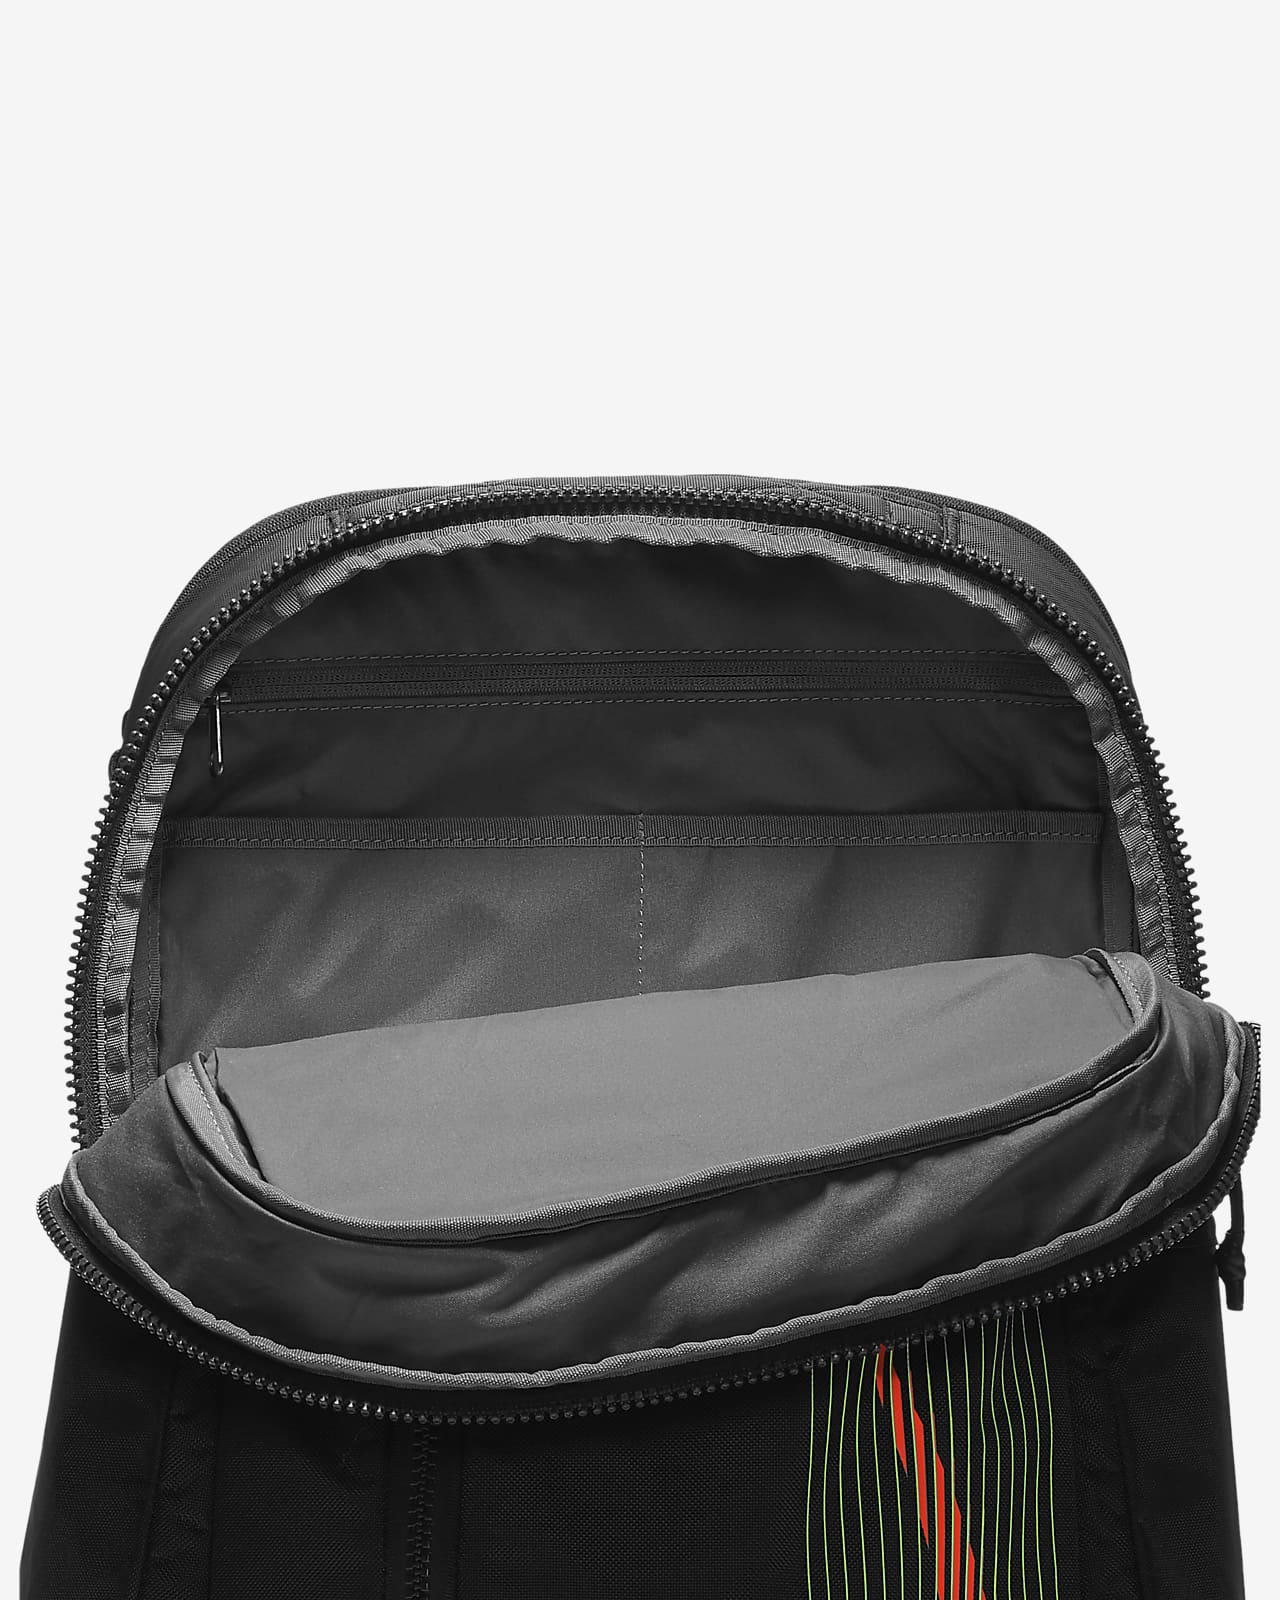 nike vapor 2.0 training backpack